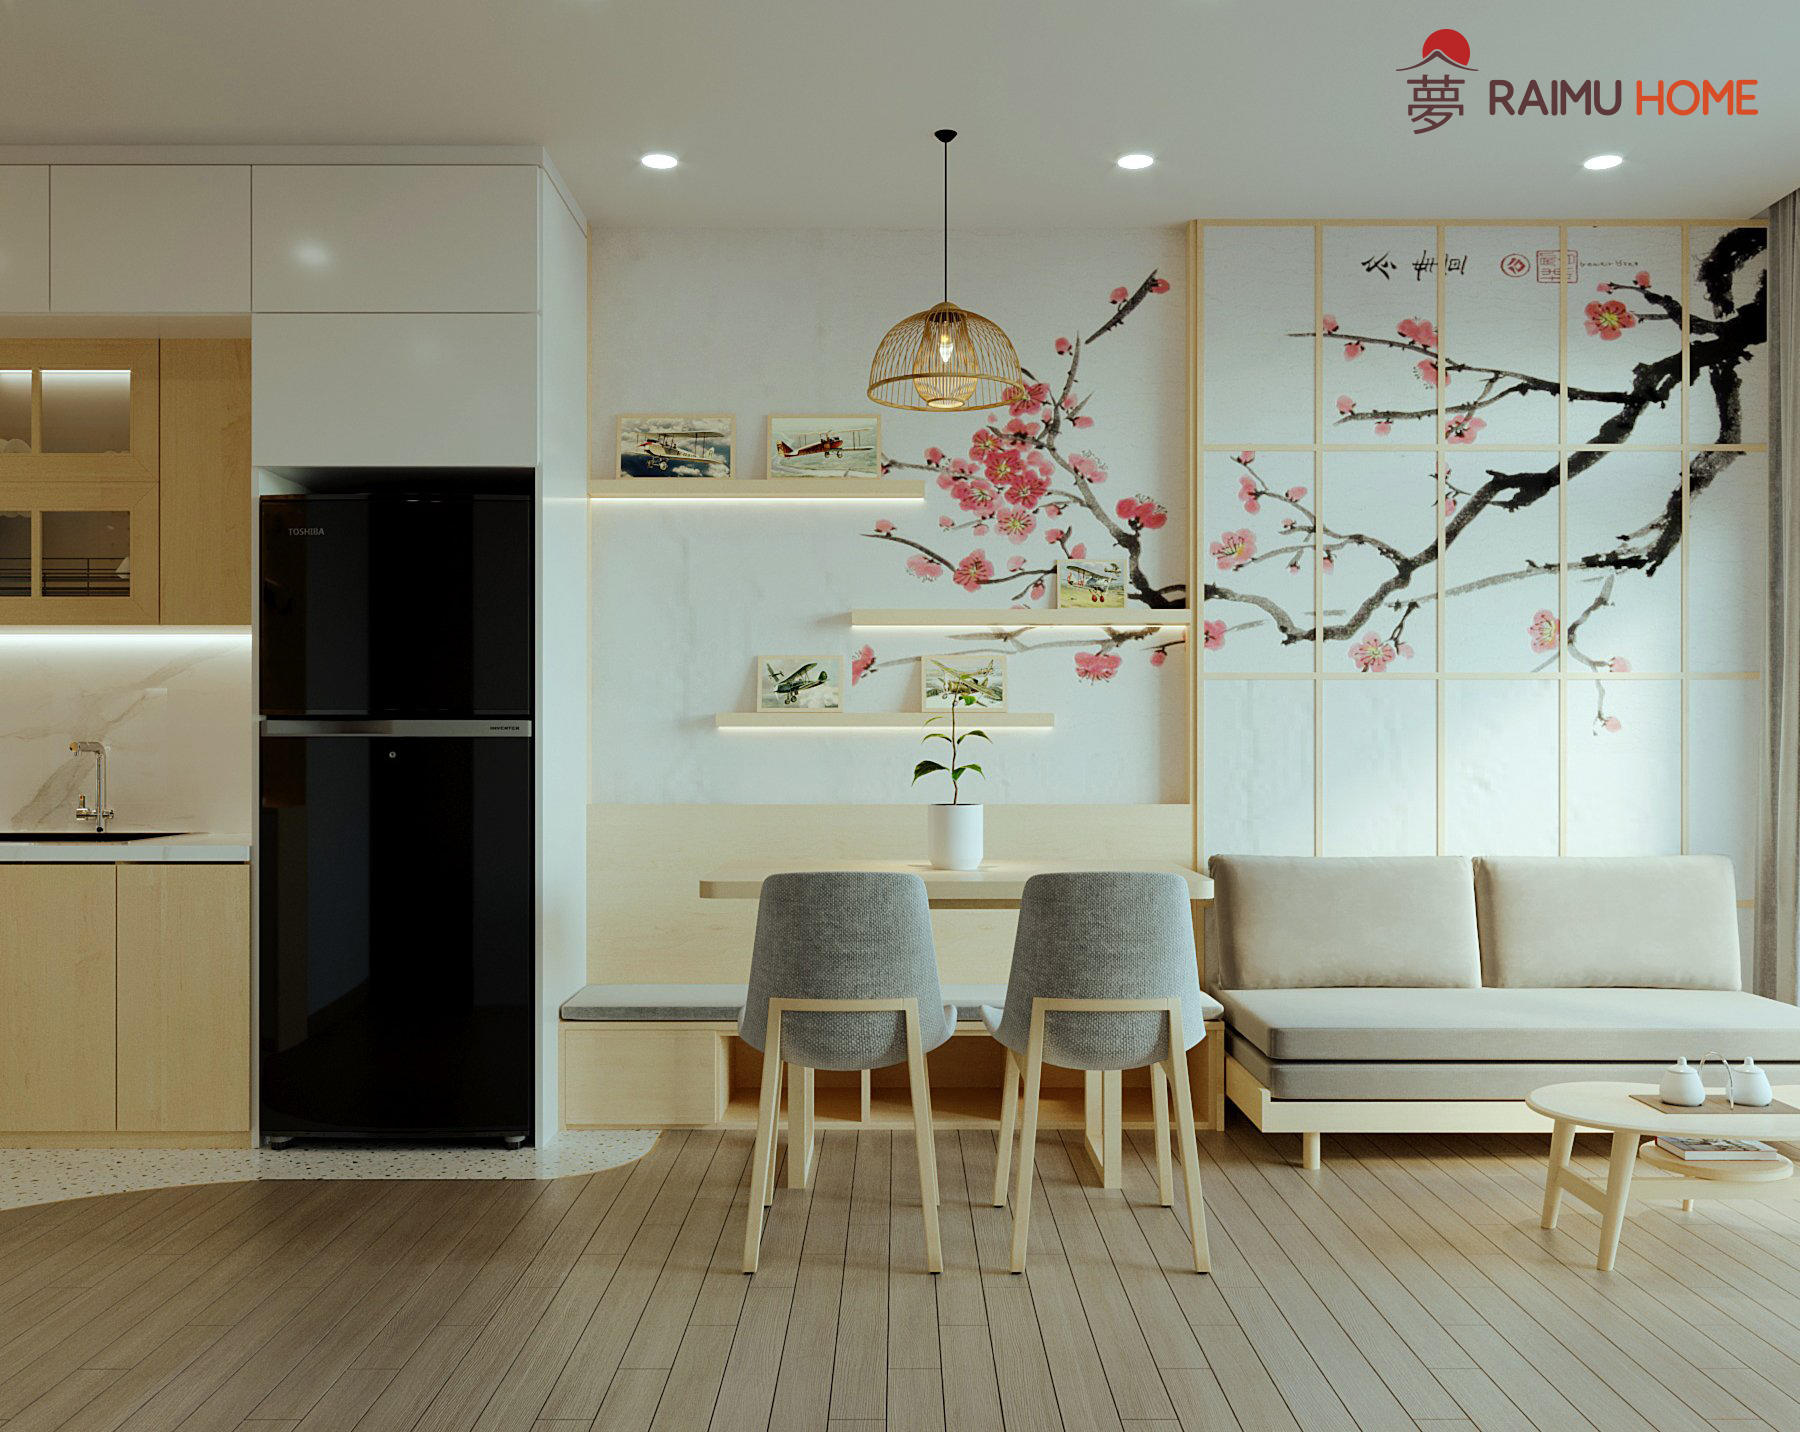 Xu hướng thiết kế nội thất chung cư phong cách Nhật Bản đang chiếm ưu thế trên thị trường hiện nay. Với sự tối giản và tinh tế trong thiết kế, các căn hộ chung cư trở nên rộng rãi và thoải mái hơn bao giờ hết. Bạn muốn khám phá những hình ảnh đẹp về xu hướng này? Hãy truy cập ngay để cùng chúng tôi khám phá!